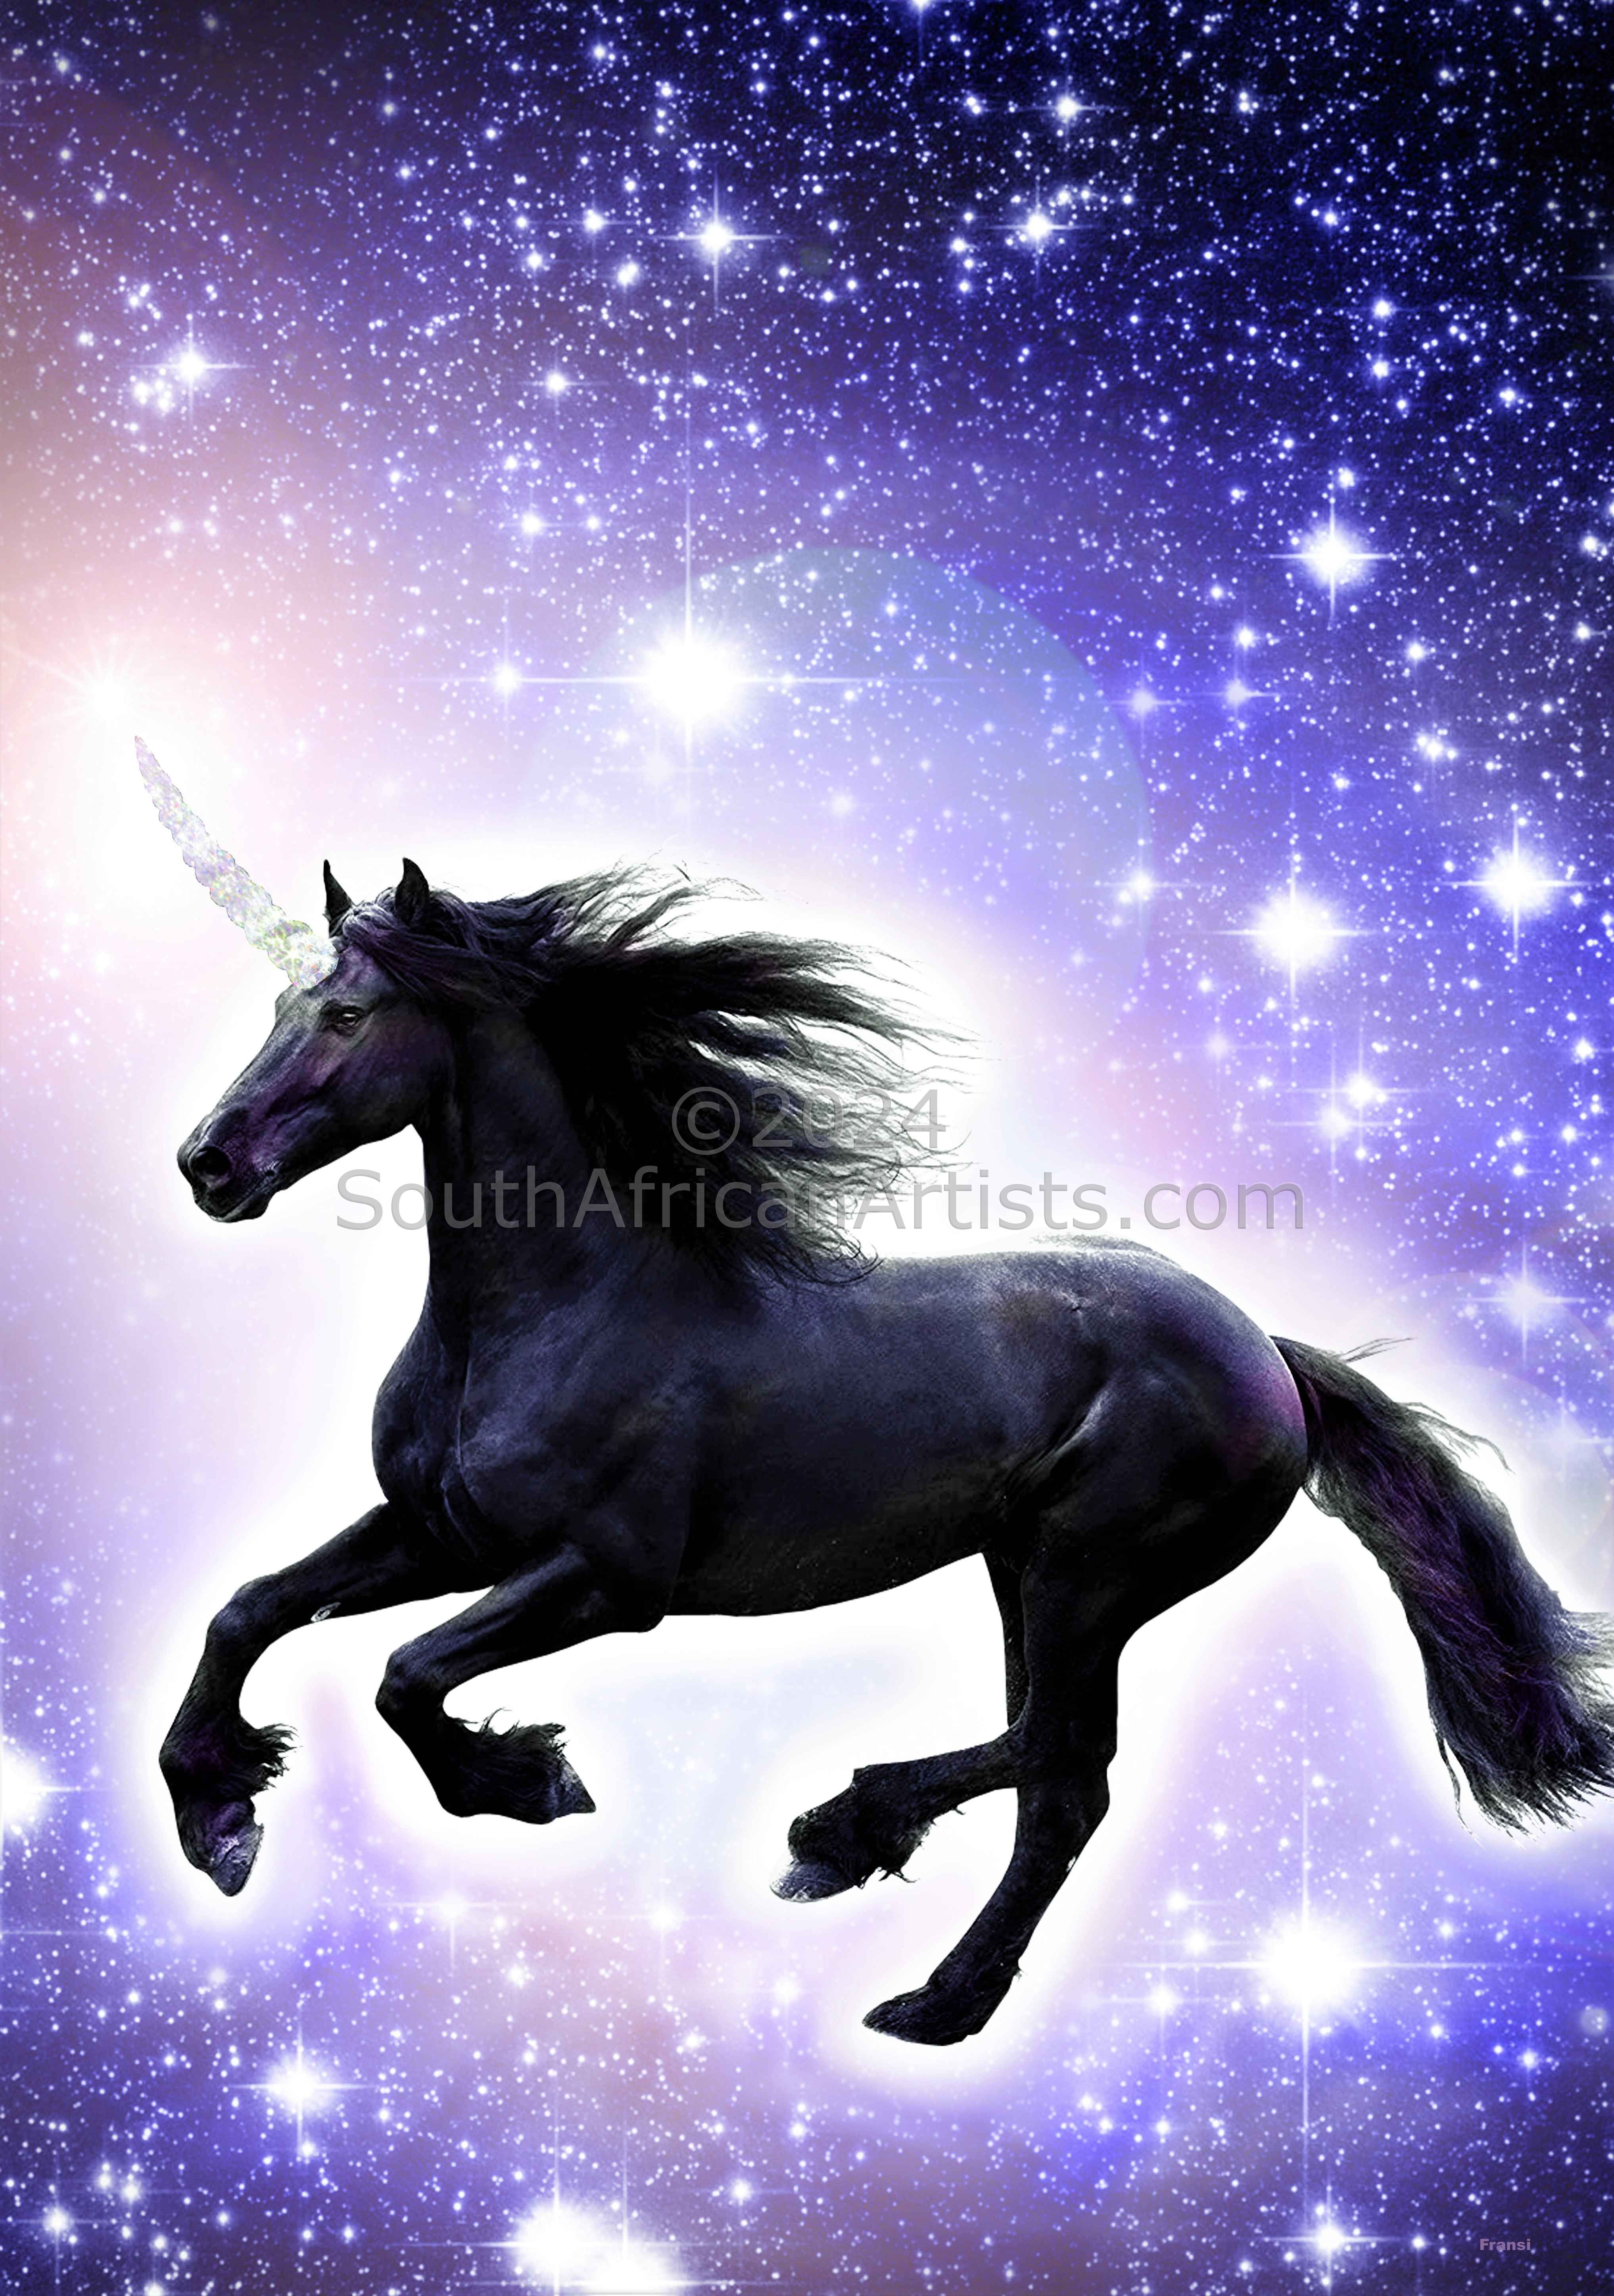 Seragh: Unicorn of Deep Transmutation